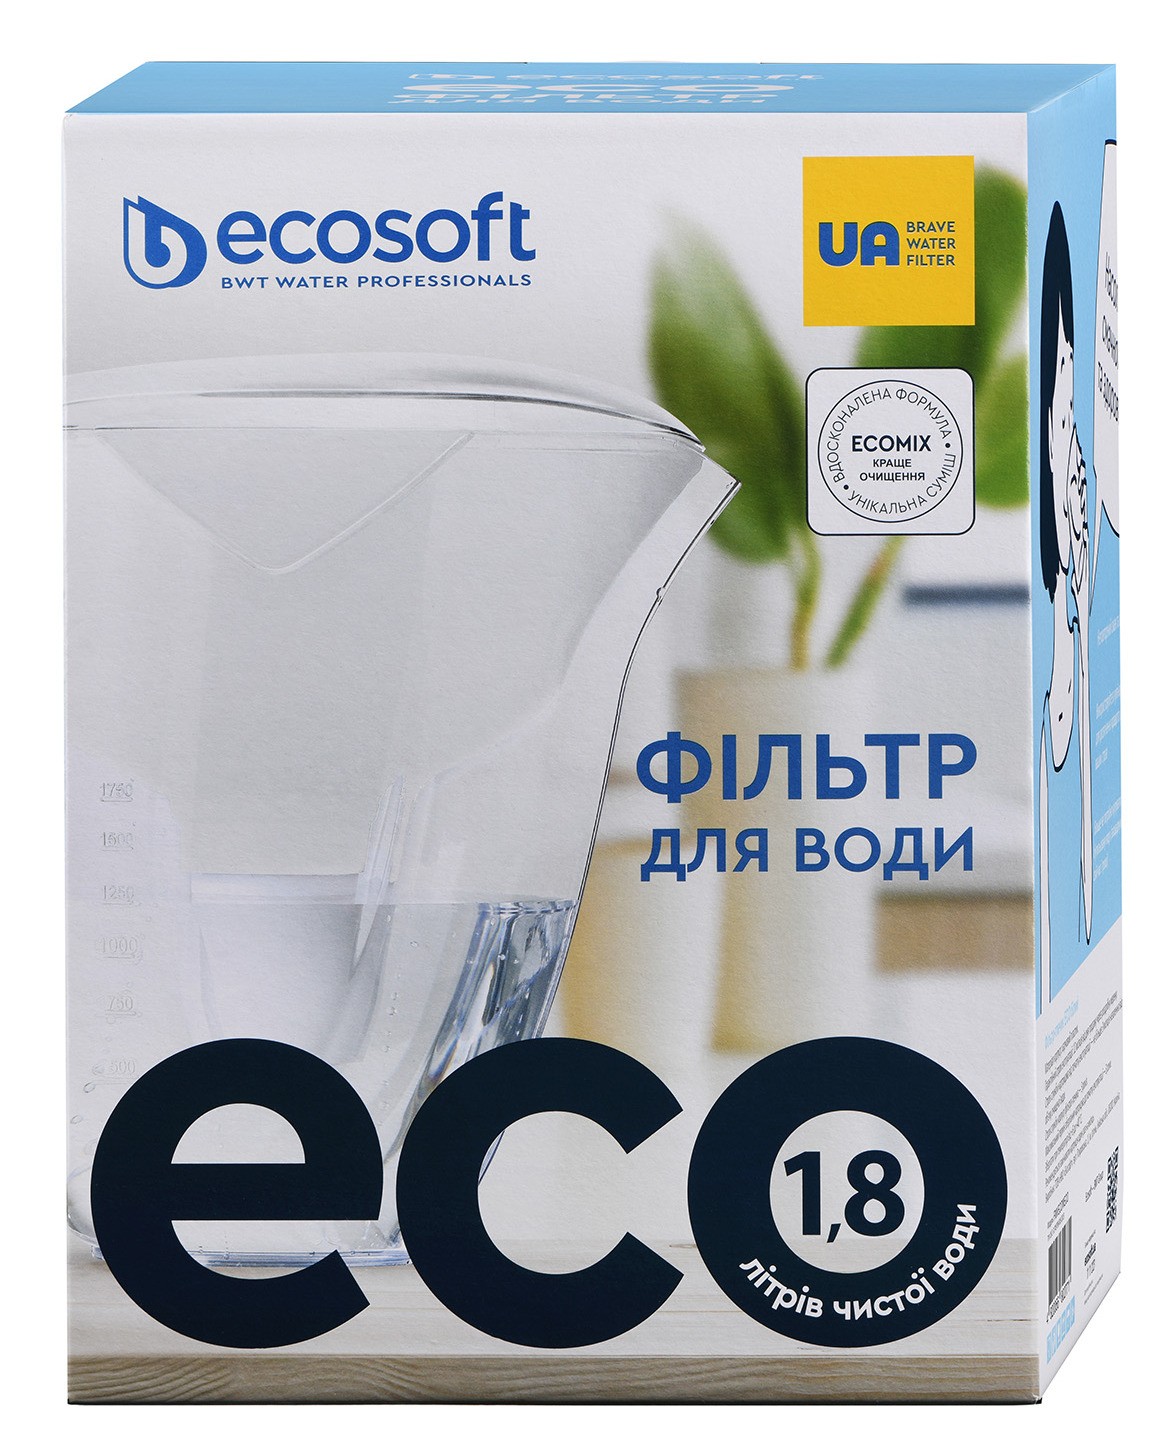 продаём Ecosoft ECO 3л (FMVECOWECO) в Украине - фото 4